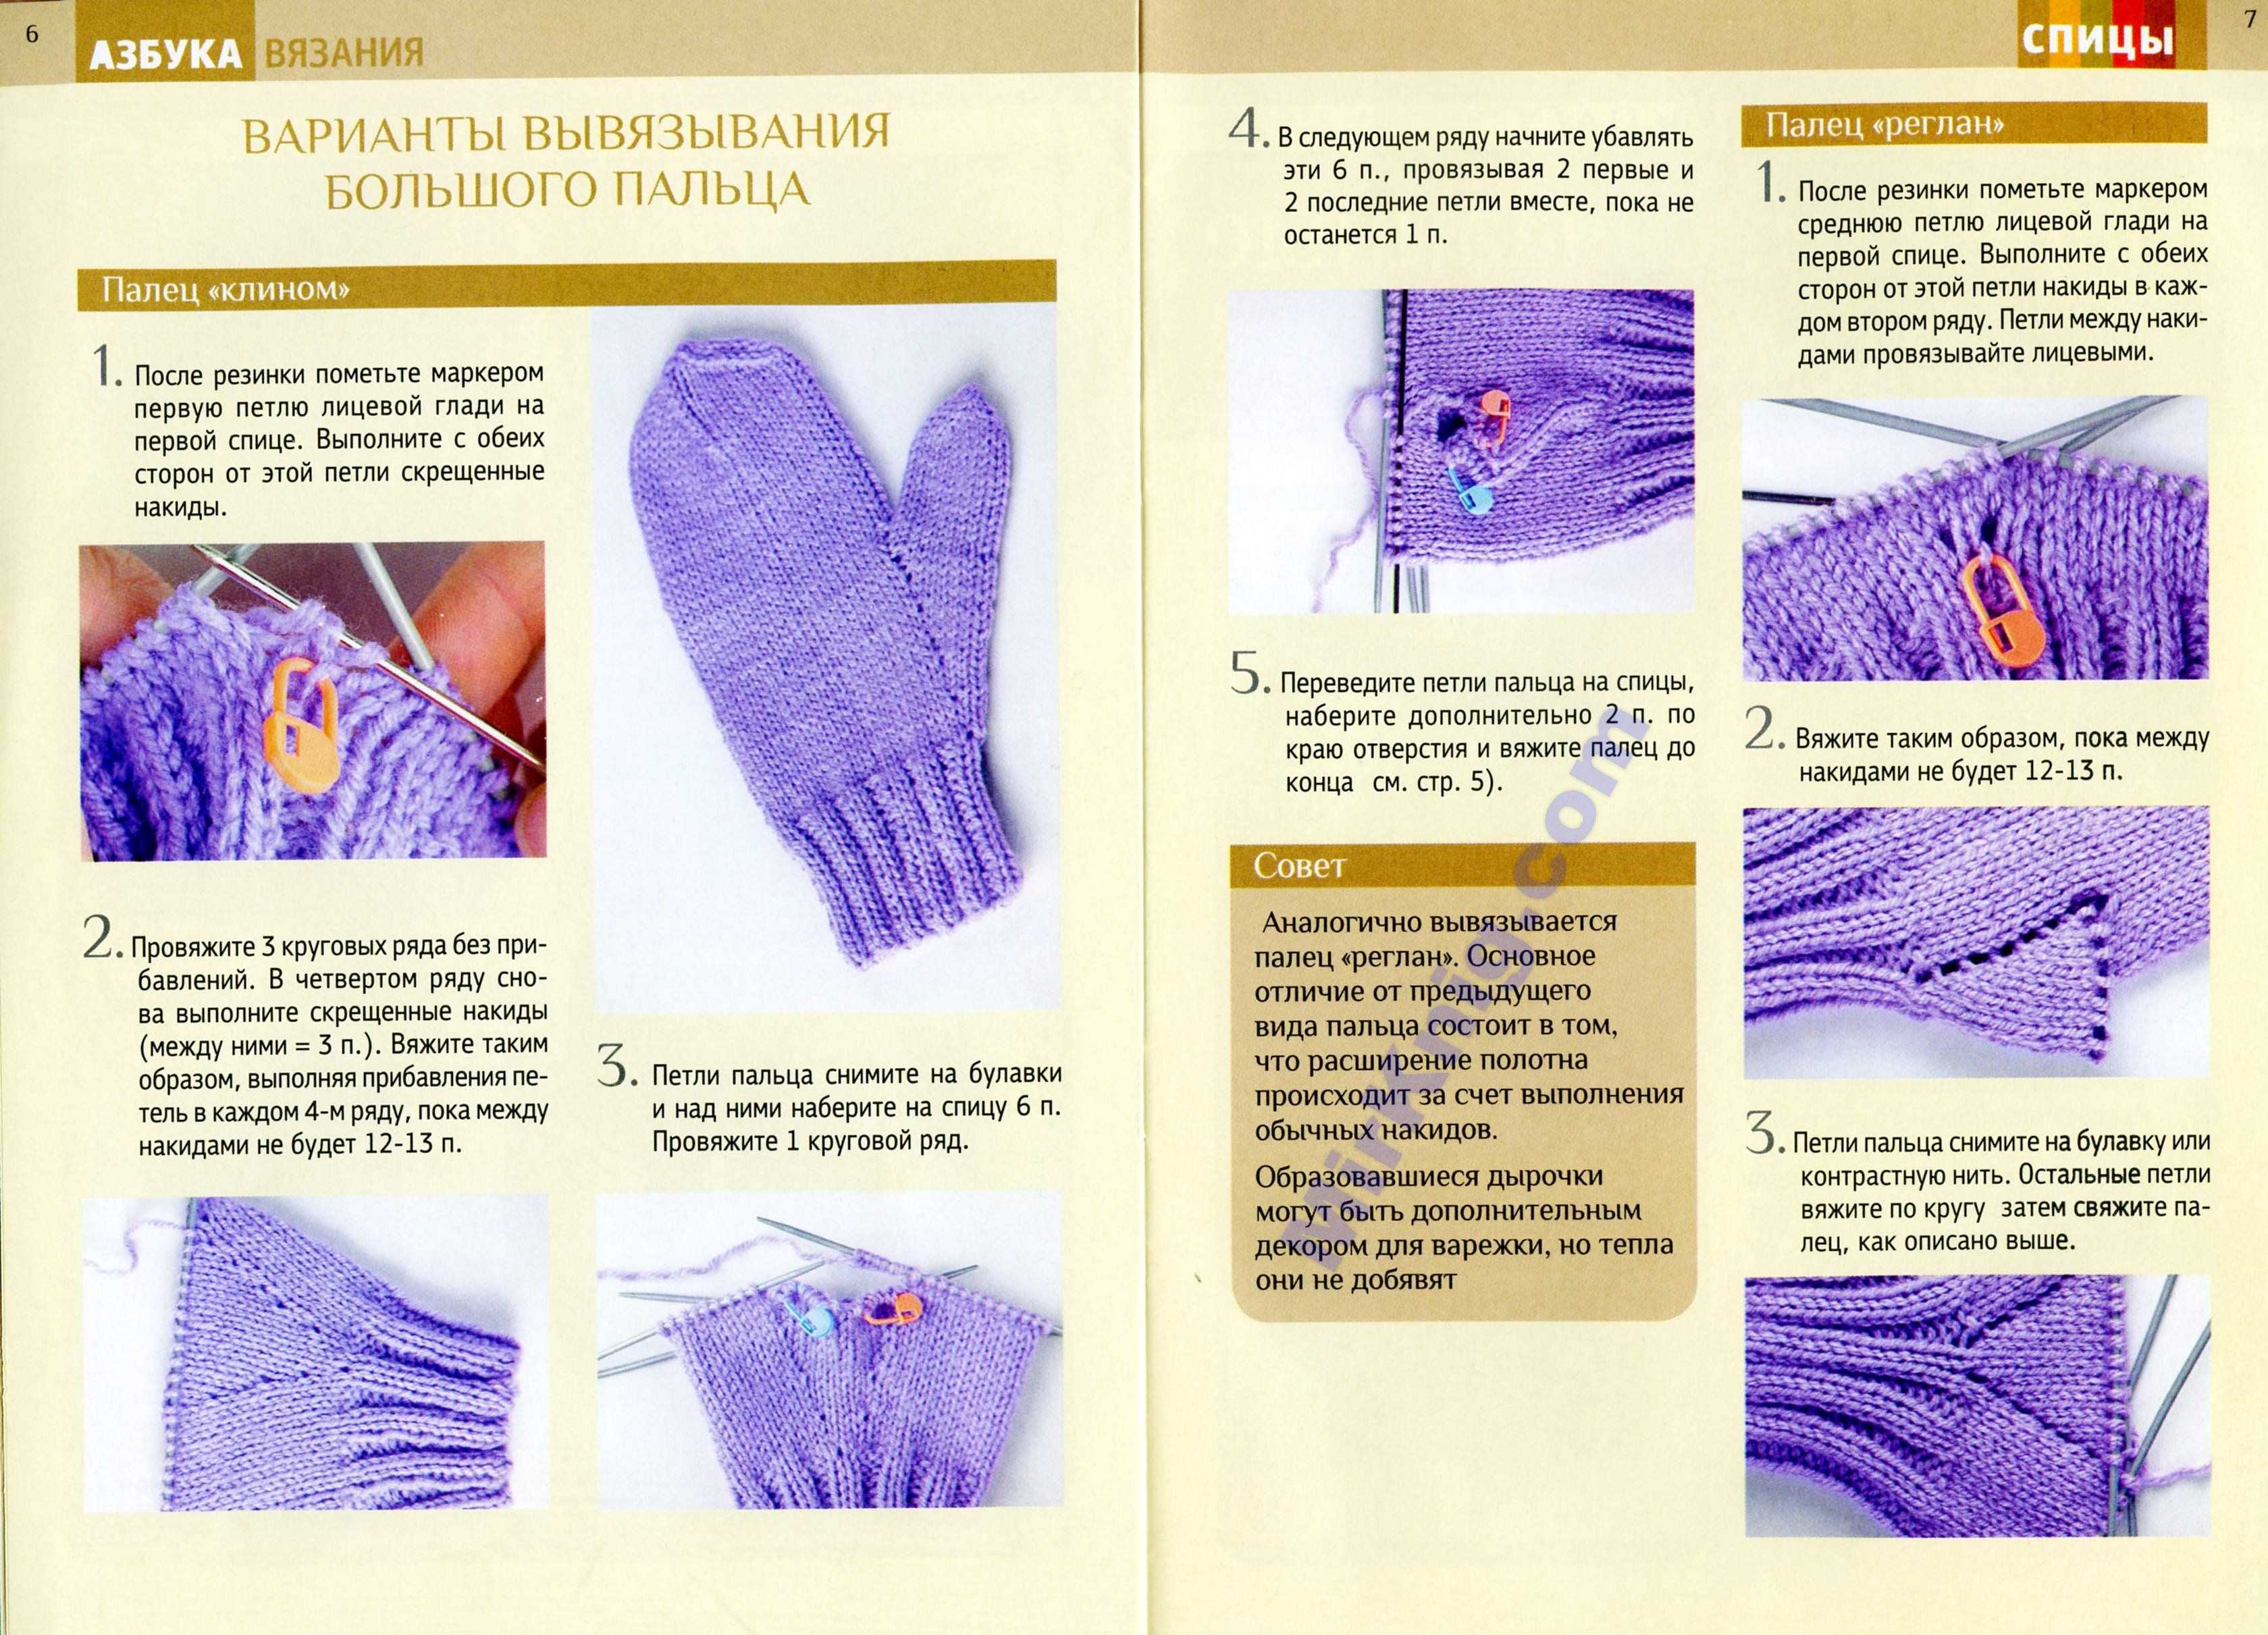 Как вязать палец на варежках спицами и крючком: подробная инструкция с видеоматериалом